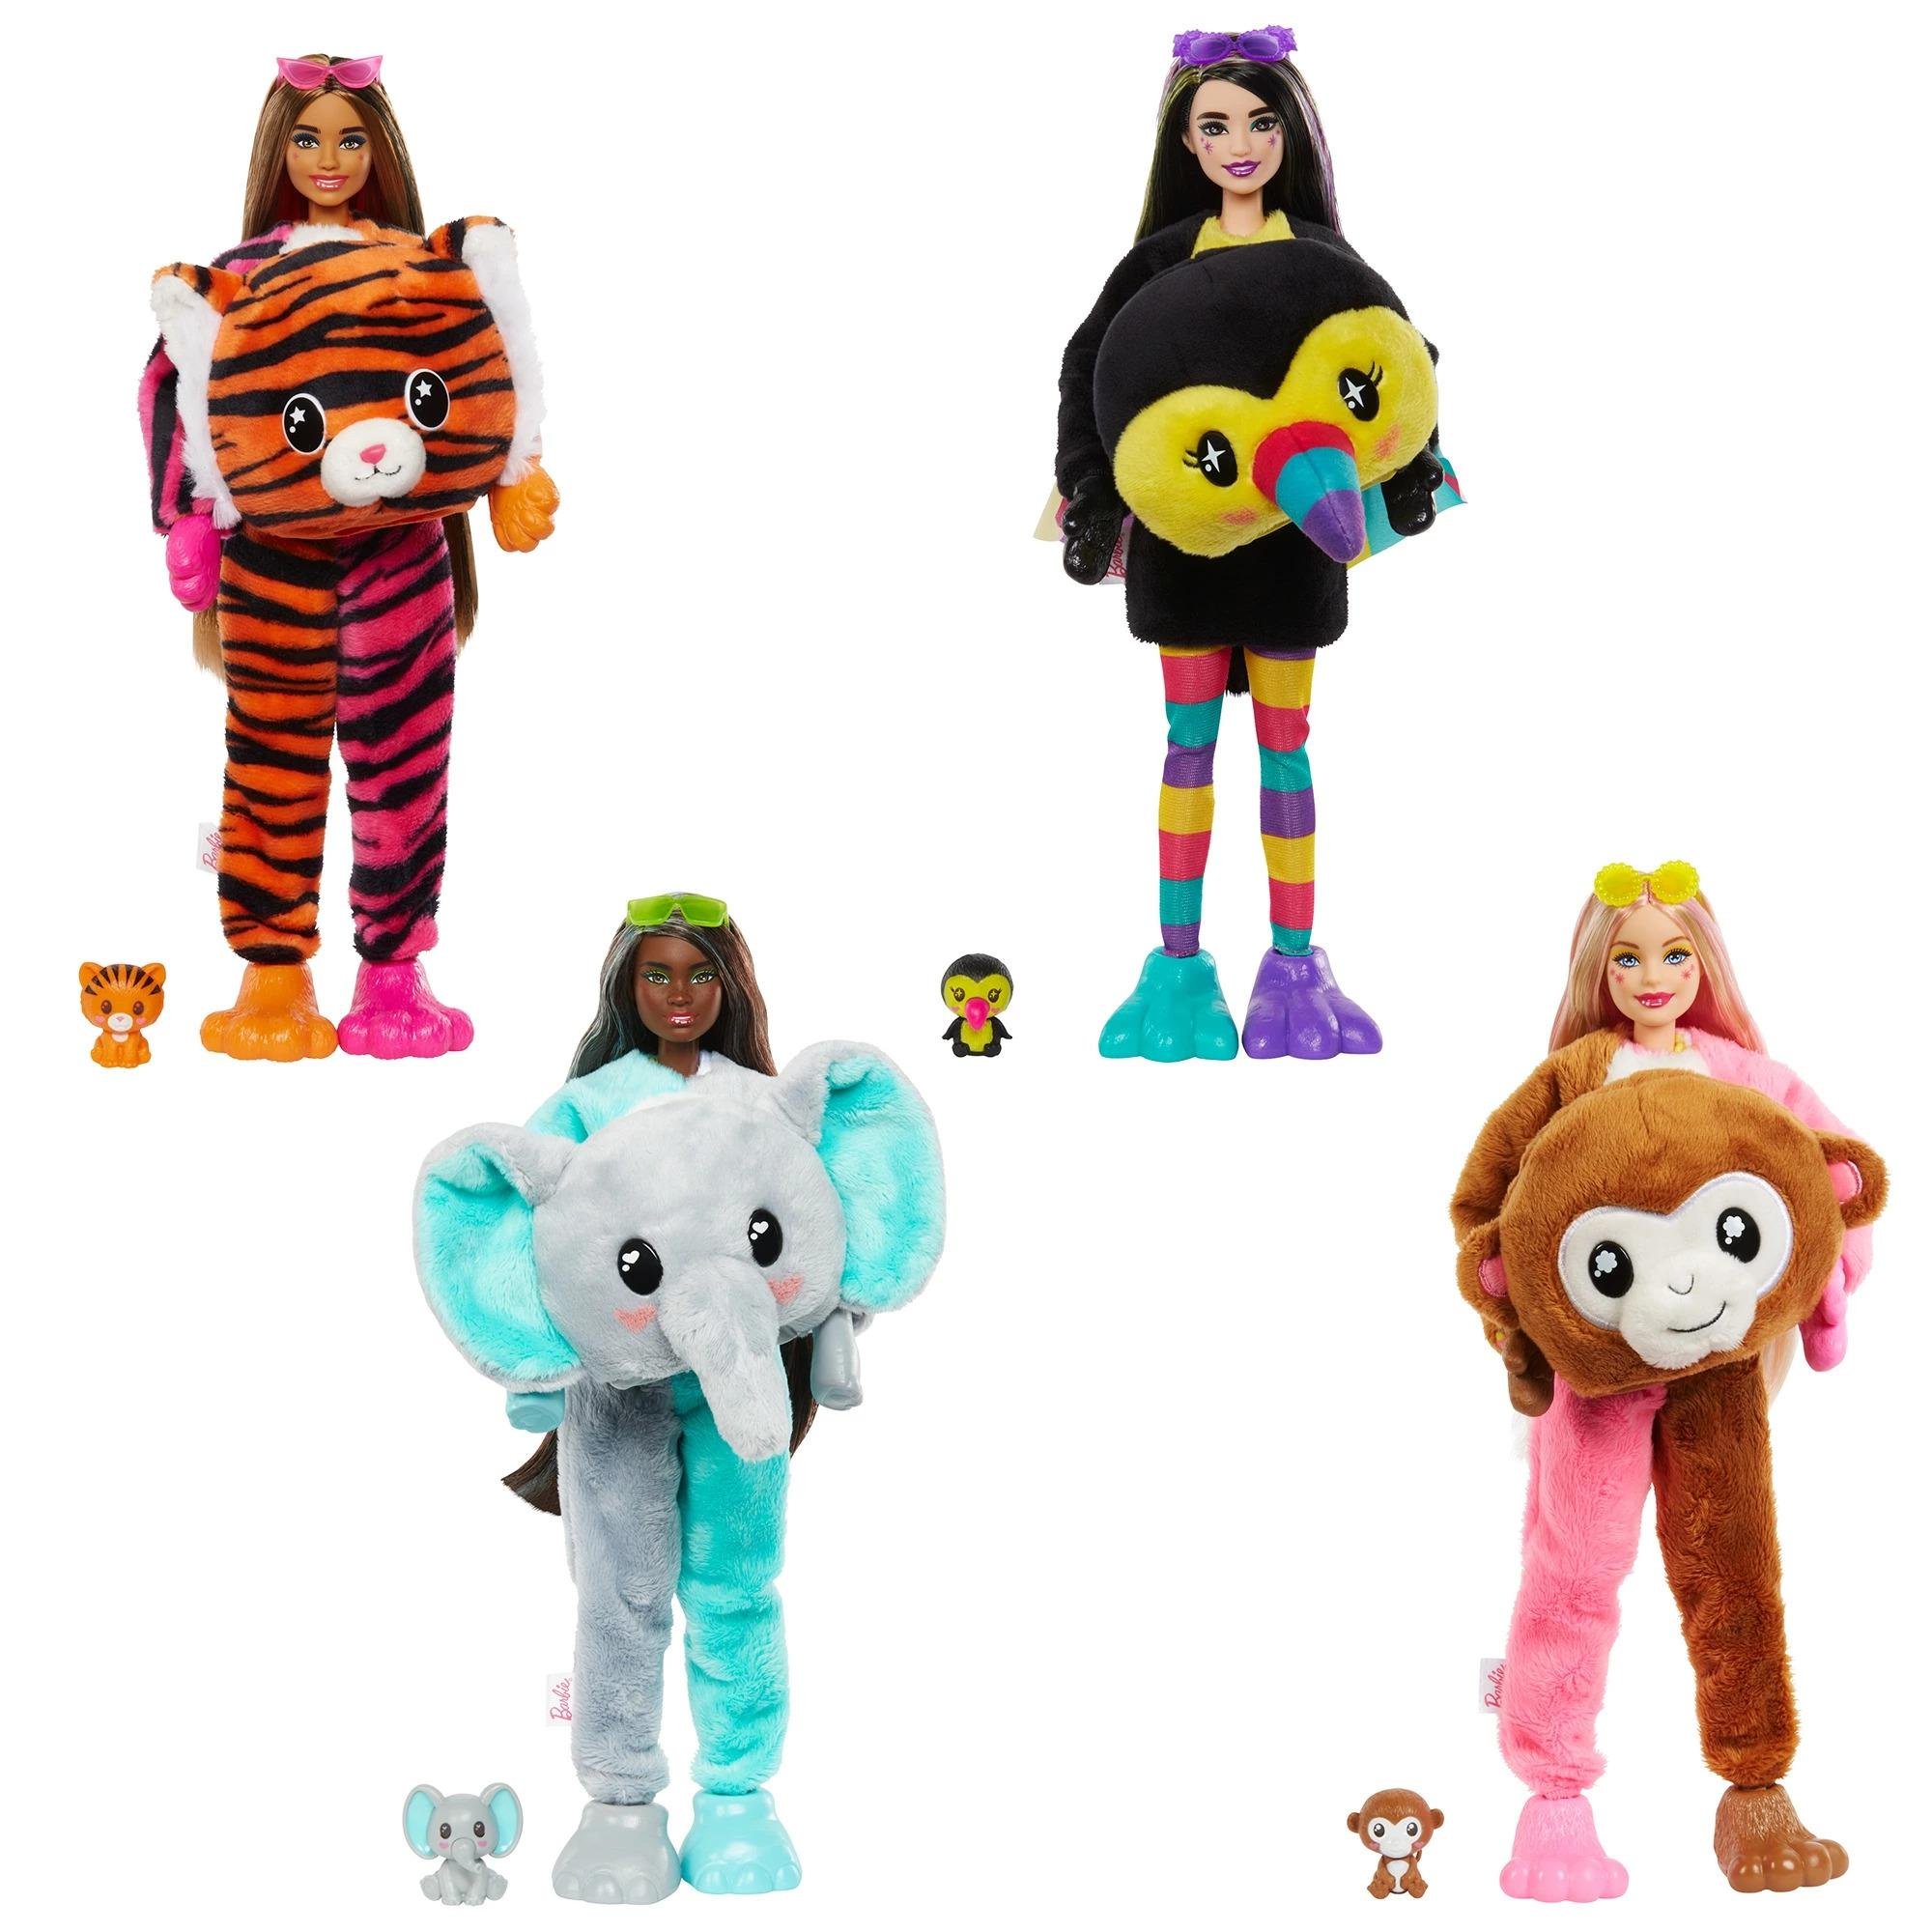 Kit de Roupas e Acessórios para Vestir sua Barbie com 5 Peças Item Sortido  – 1 Kit - RioMar Recife Online